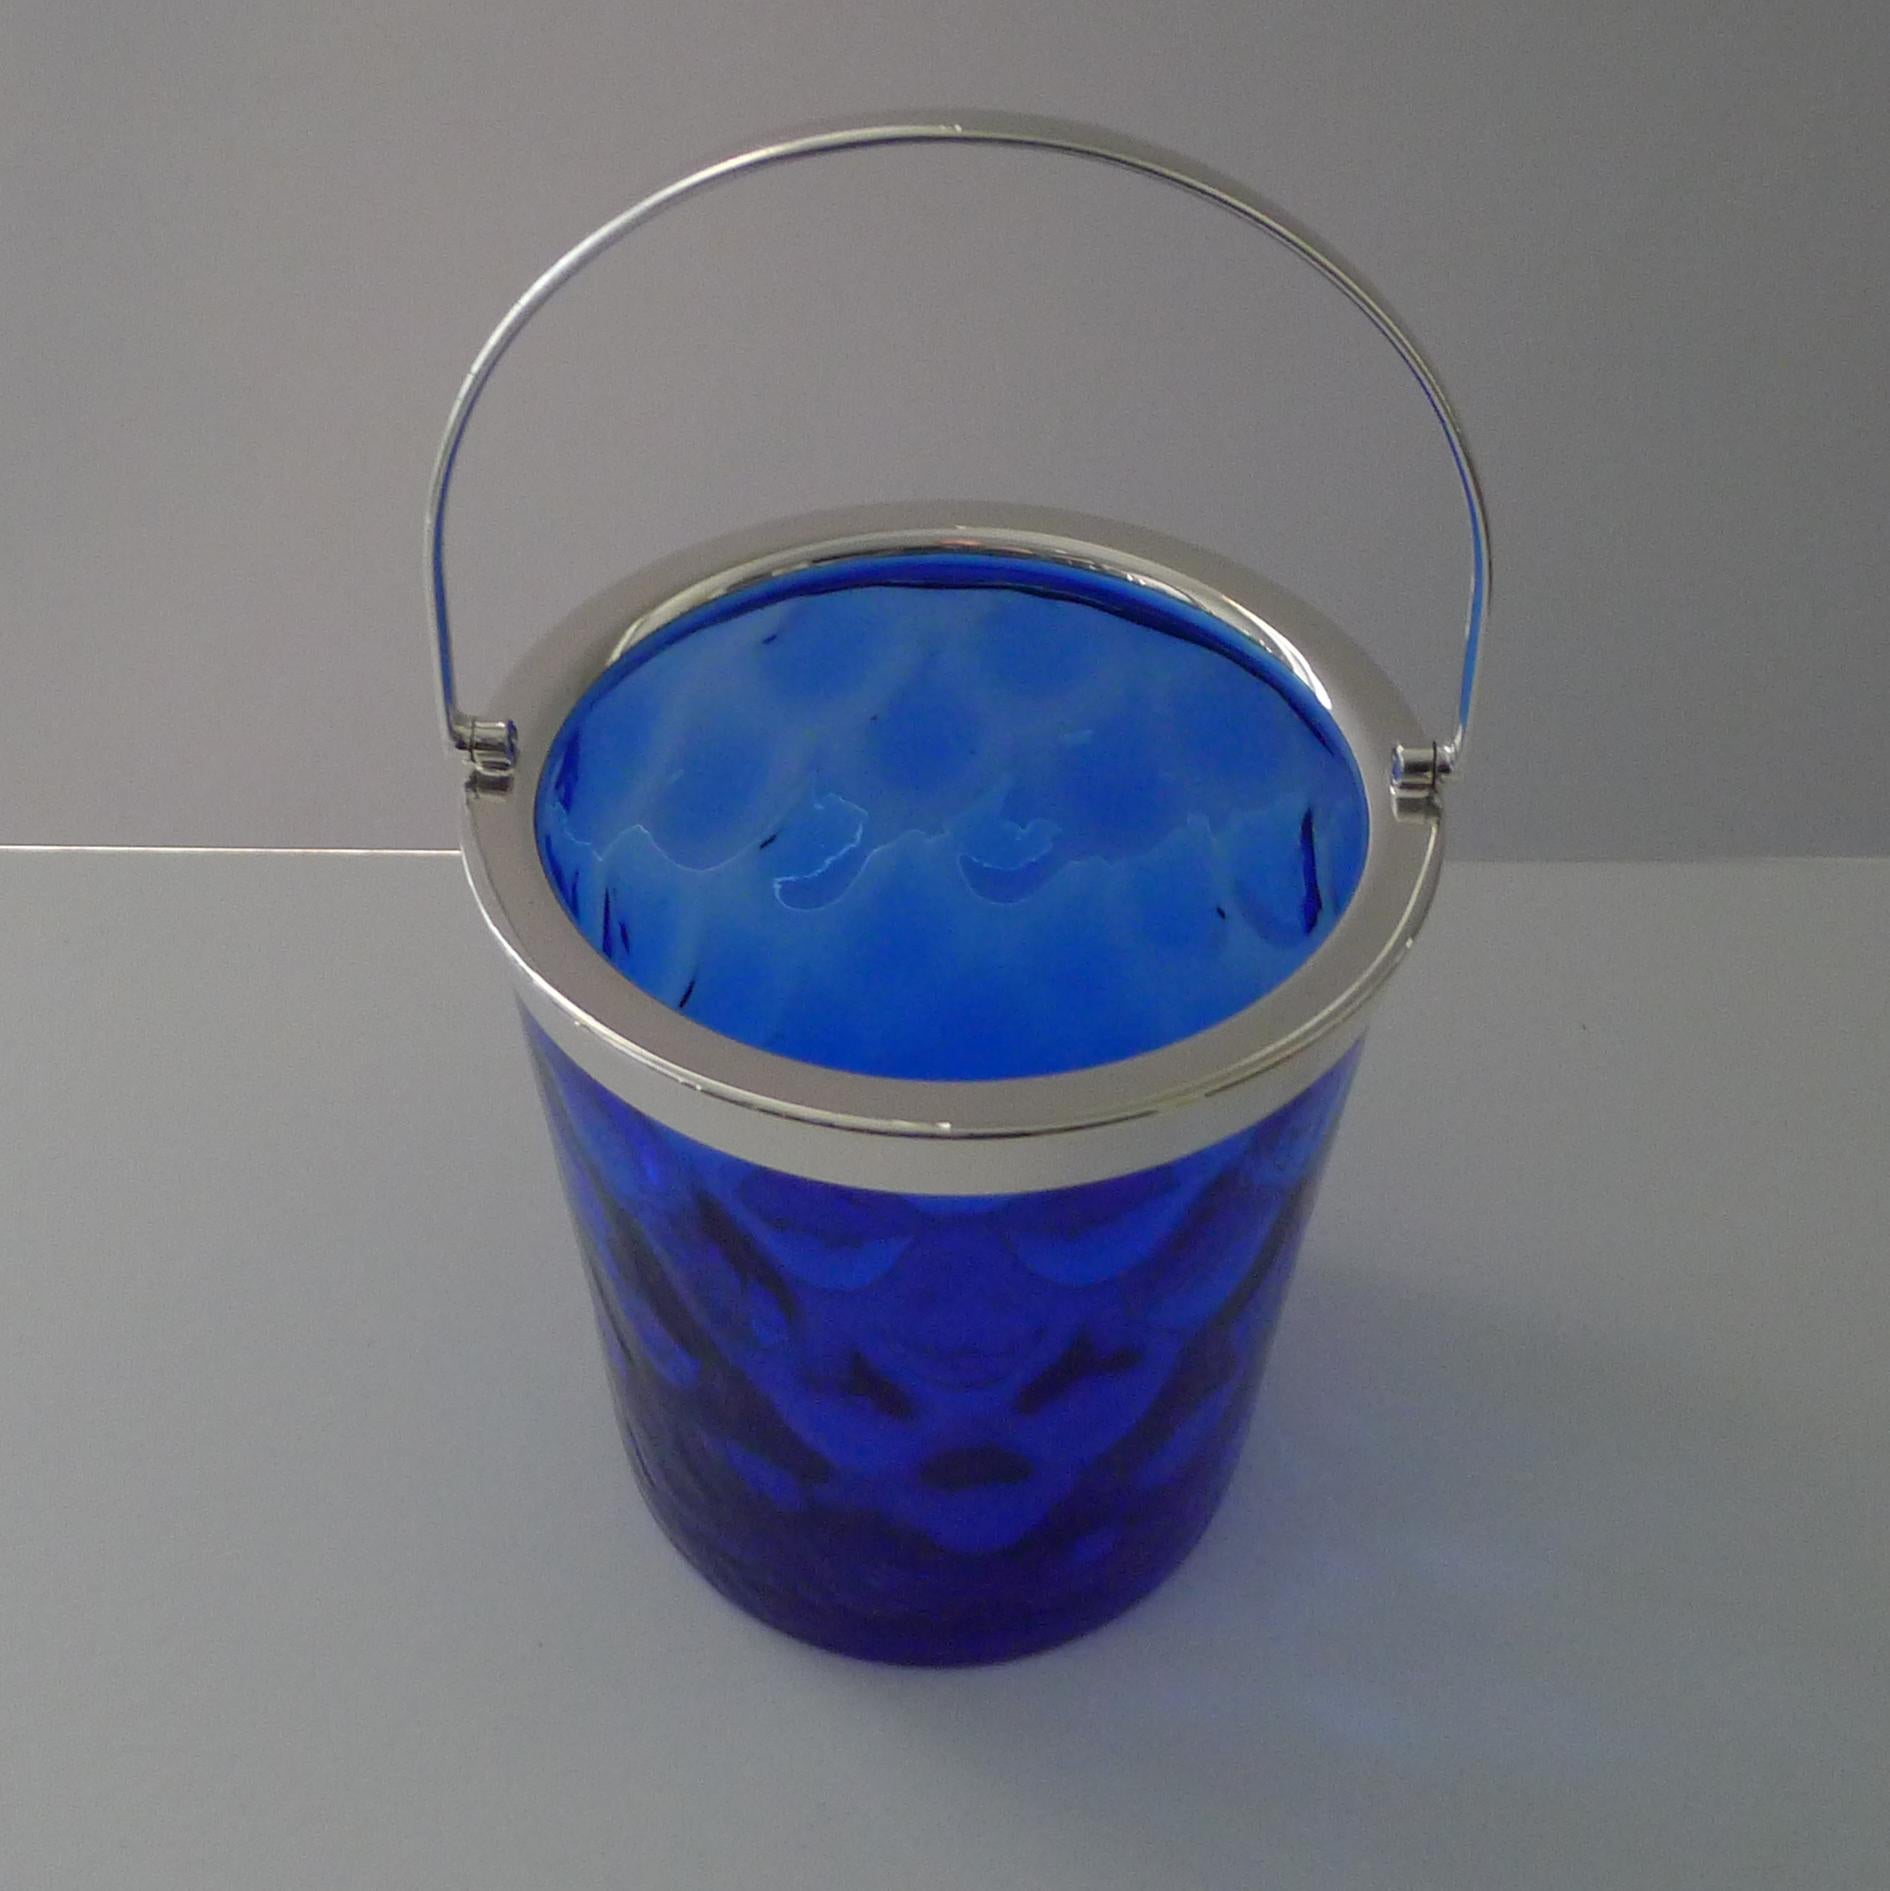 Un beau seau à glace vintage en verre bleu Bristol soufflé à la main avec une marque de pontil polie sur le dessous.

Le verre présente un motif ondulé et les accessoires sont en métal argenté.  Pas de marques, d'origine anglaise et datant des